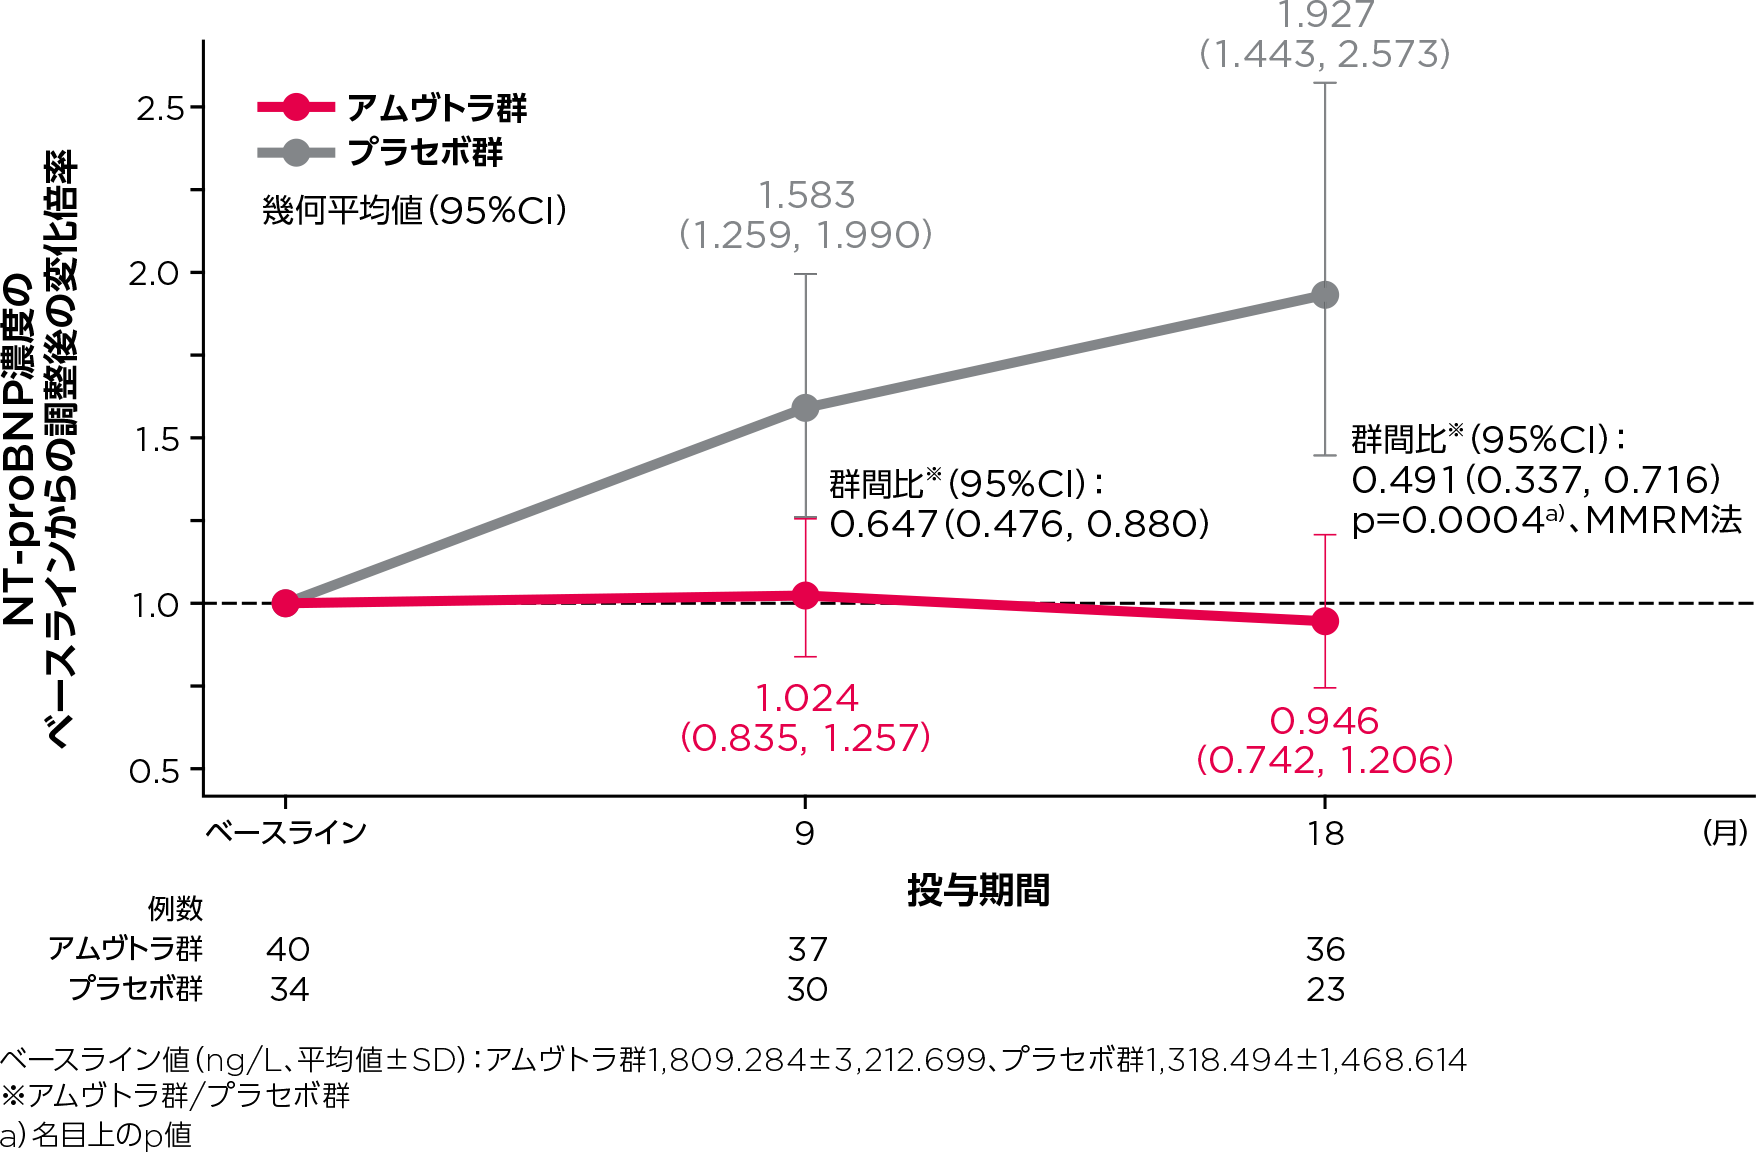 心アミロイドーシス集団におけるNT-proBNP濃度のベースラインからの変化倍率の推移のグラフ